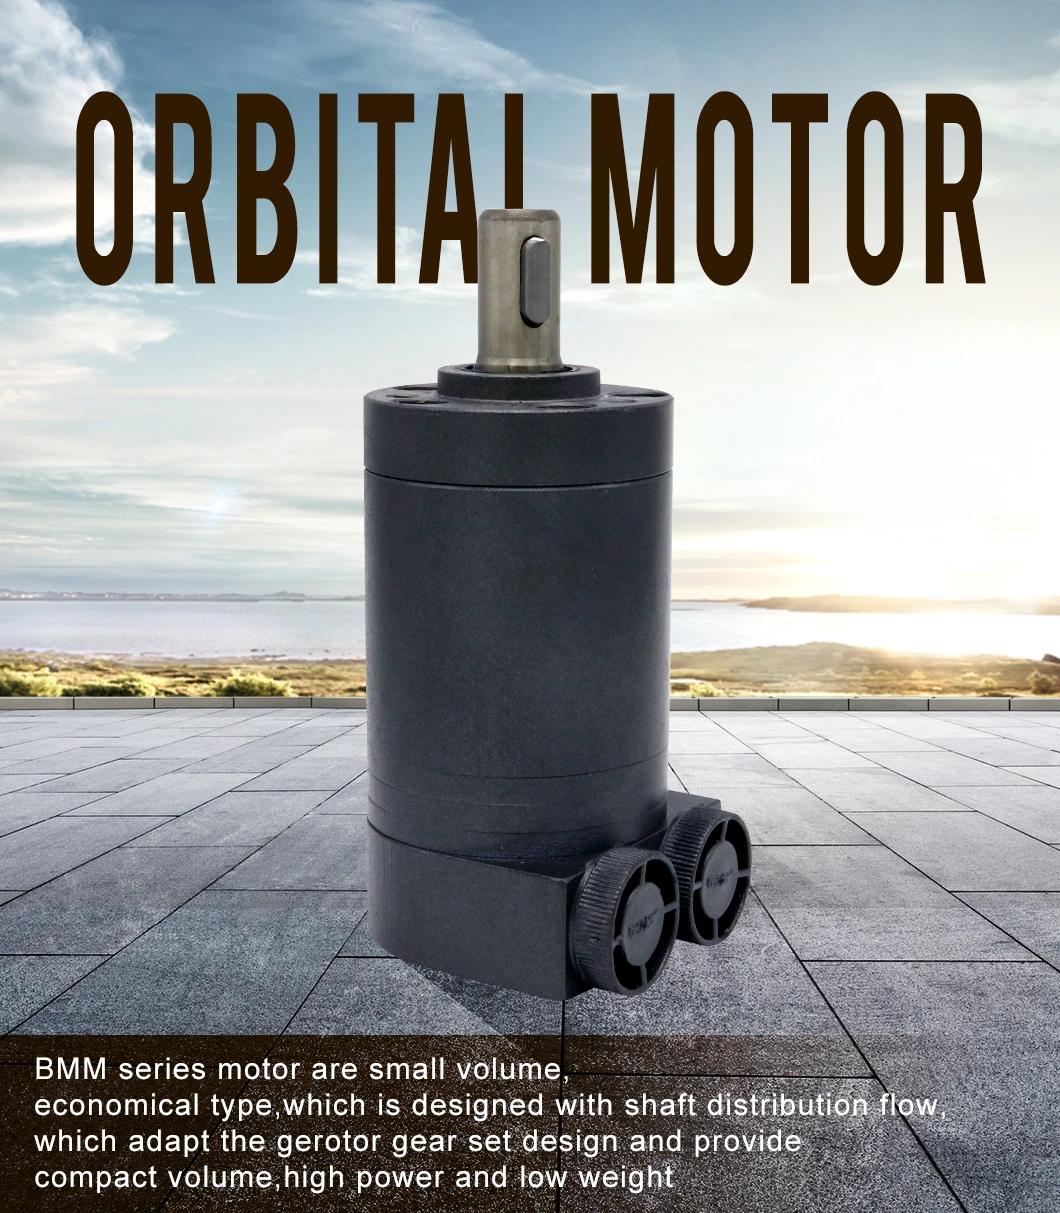 Bmm Omm Orbit Motor Danfoss Hydraulic for Sweeper Motor Oil Pump